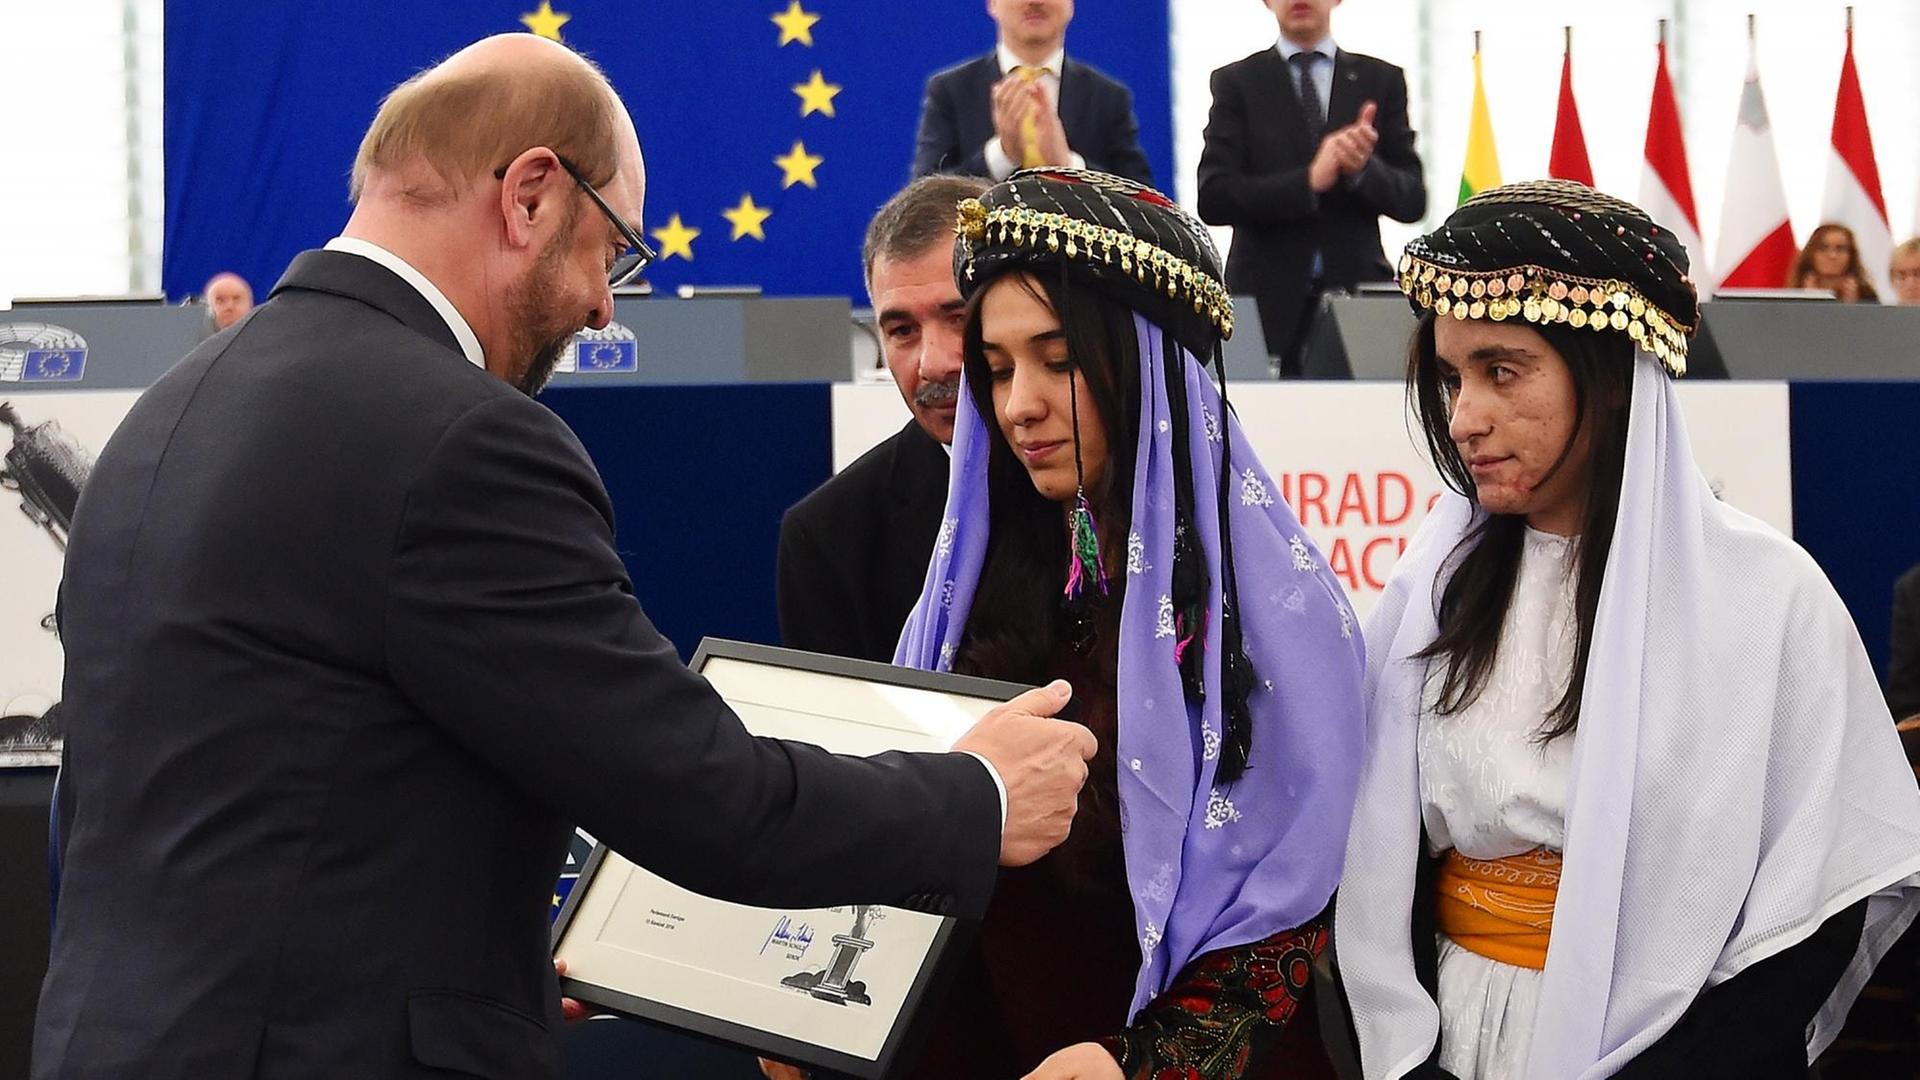 Der Präsident des Europäischen Parlaments, Martin Schulz, überreicht den Sacharow-Preis an die Jesidinnen Nadia Murad und Lamija Adschi Baschar.